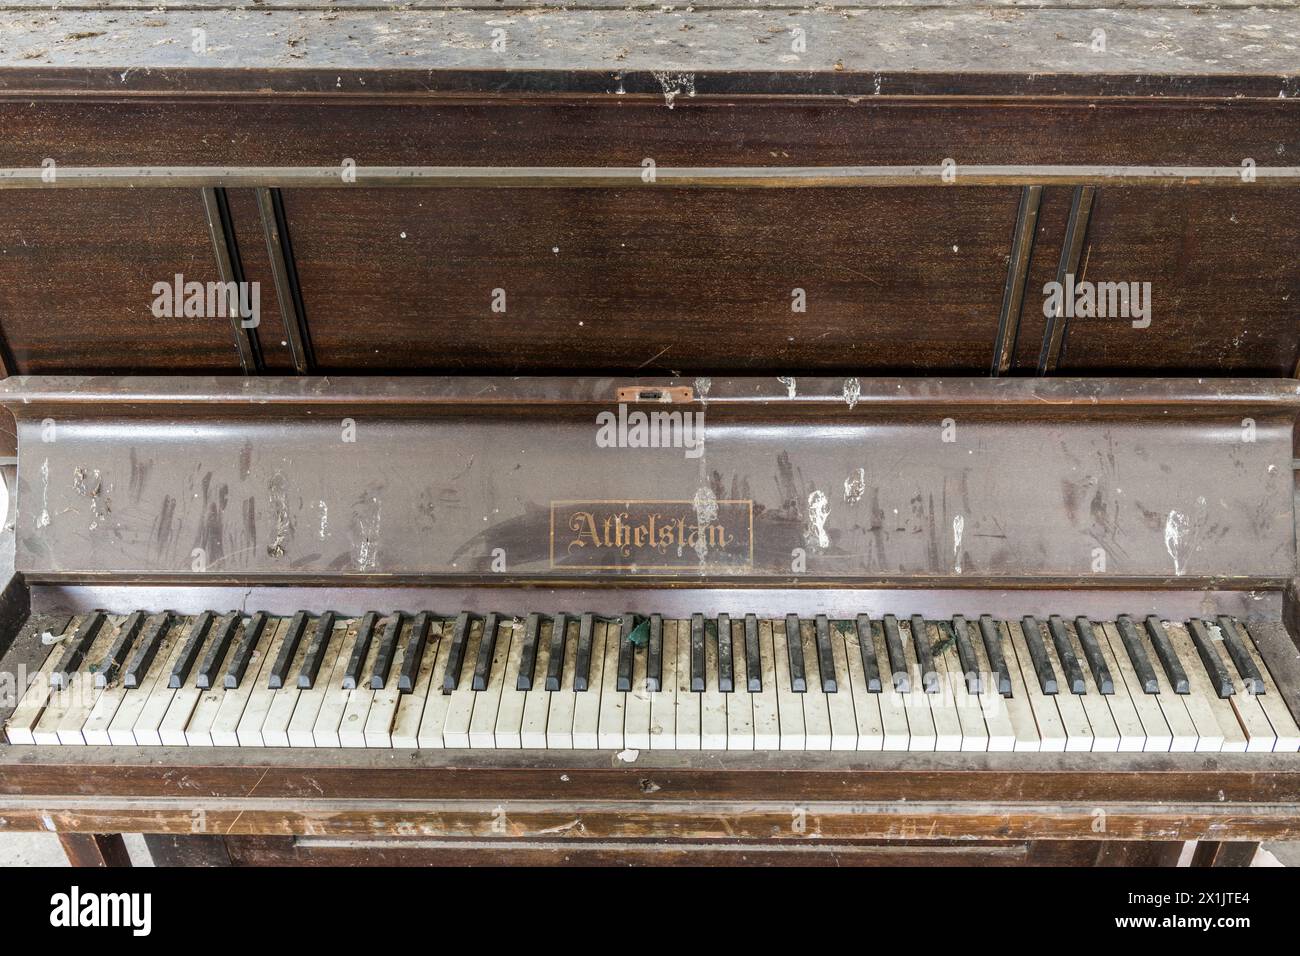 Un vieux piano droit abandonné Athelstan trouvé dans un bâtiment abandonné, Londres, Royaume-Uni Banque D'Images